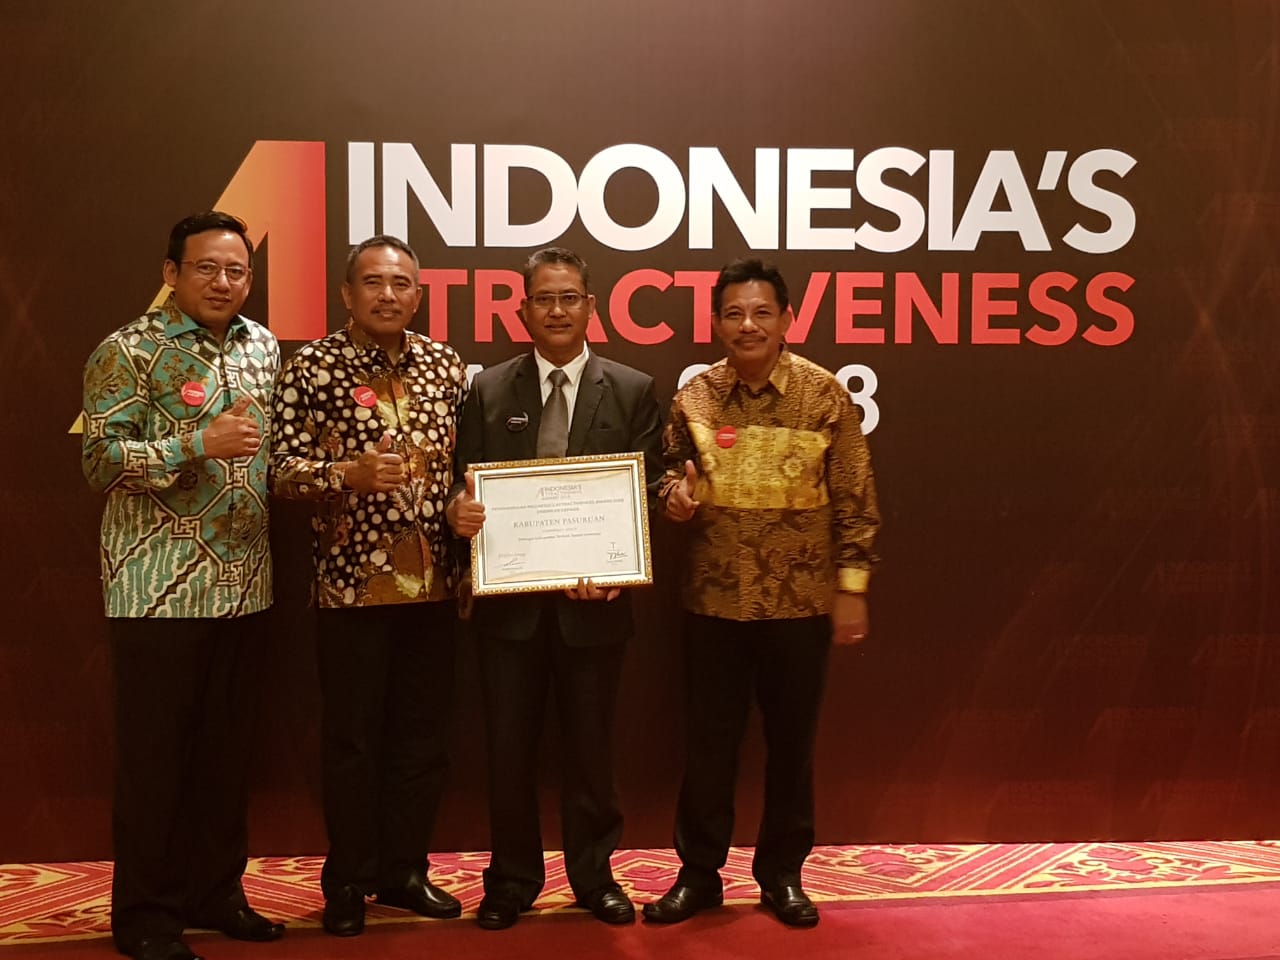 Indonesia’s Attractiveness Award (IAA)